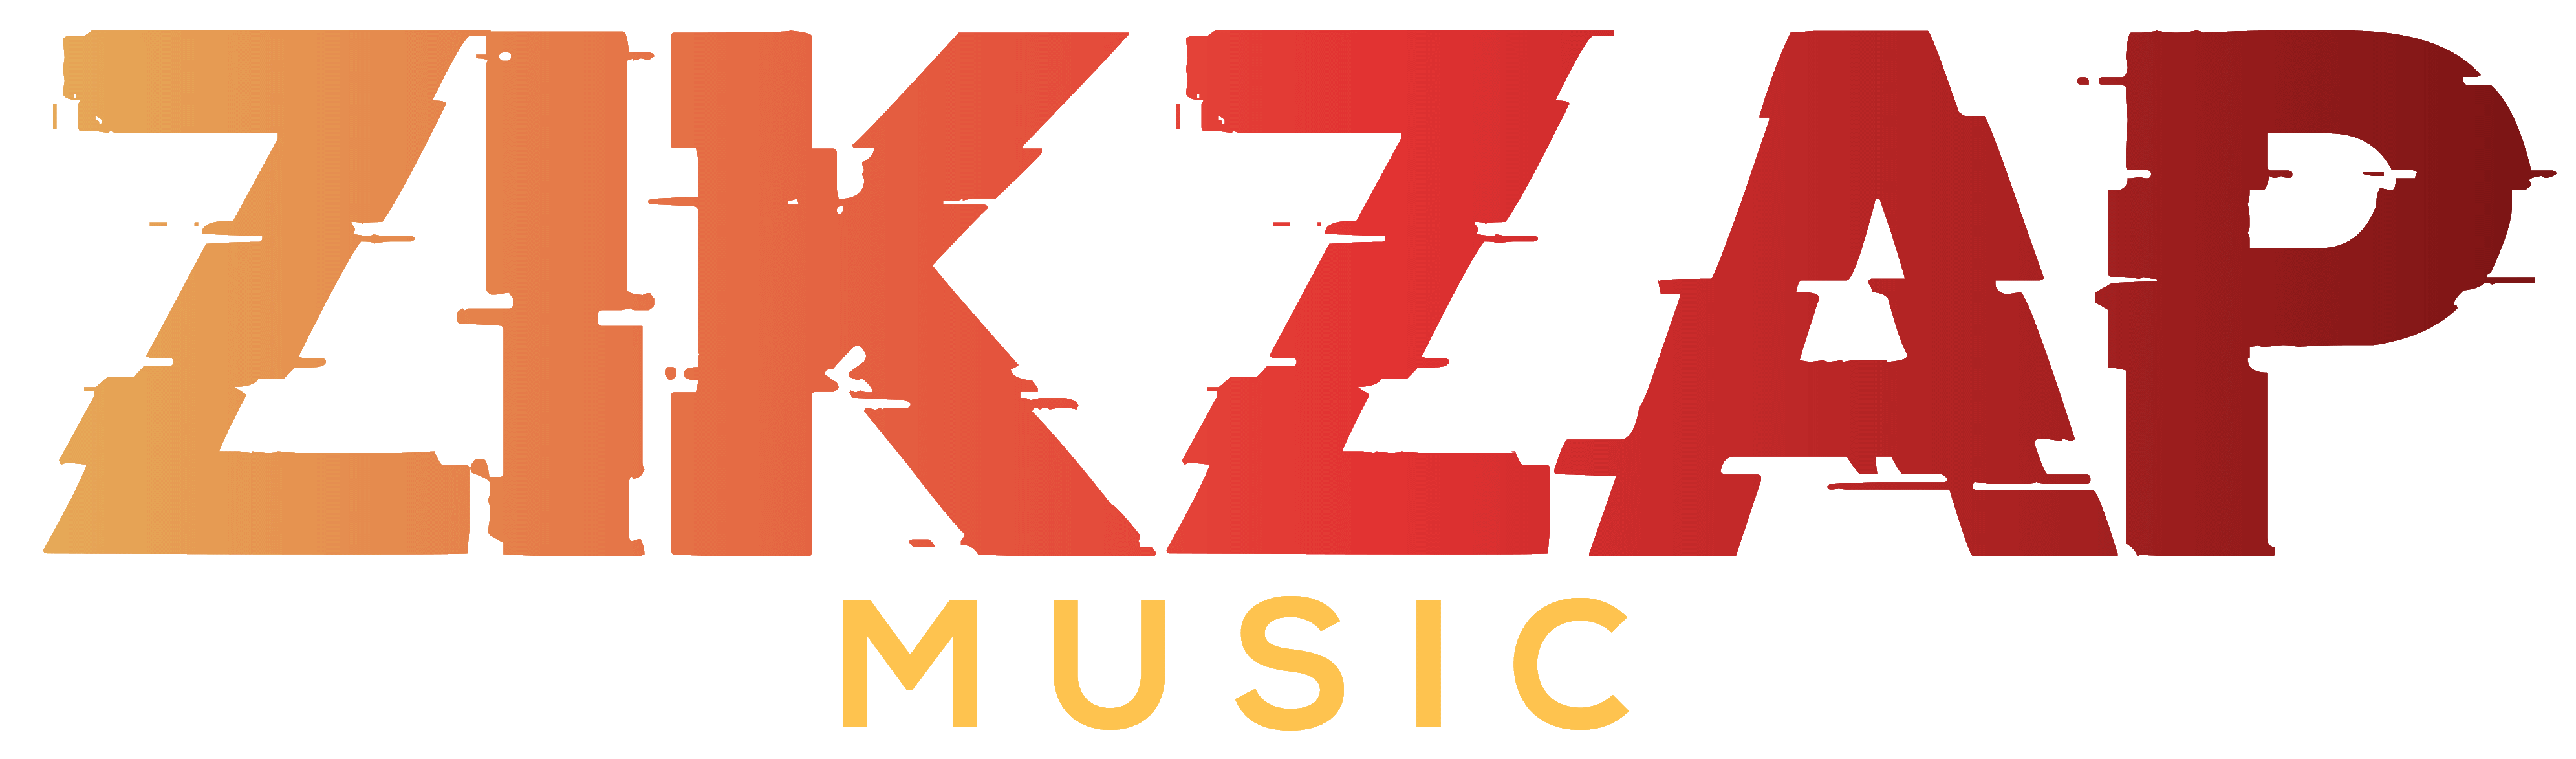 ZikZap Music